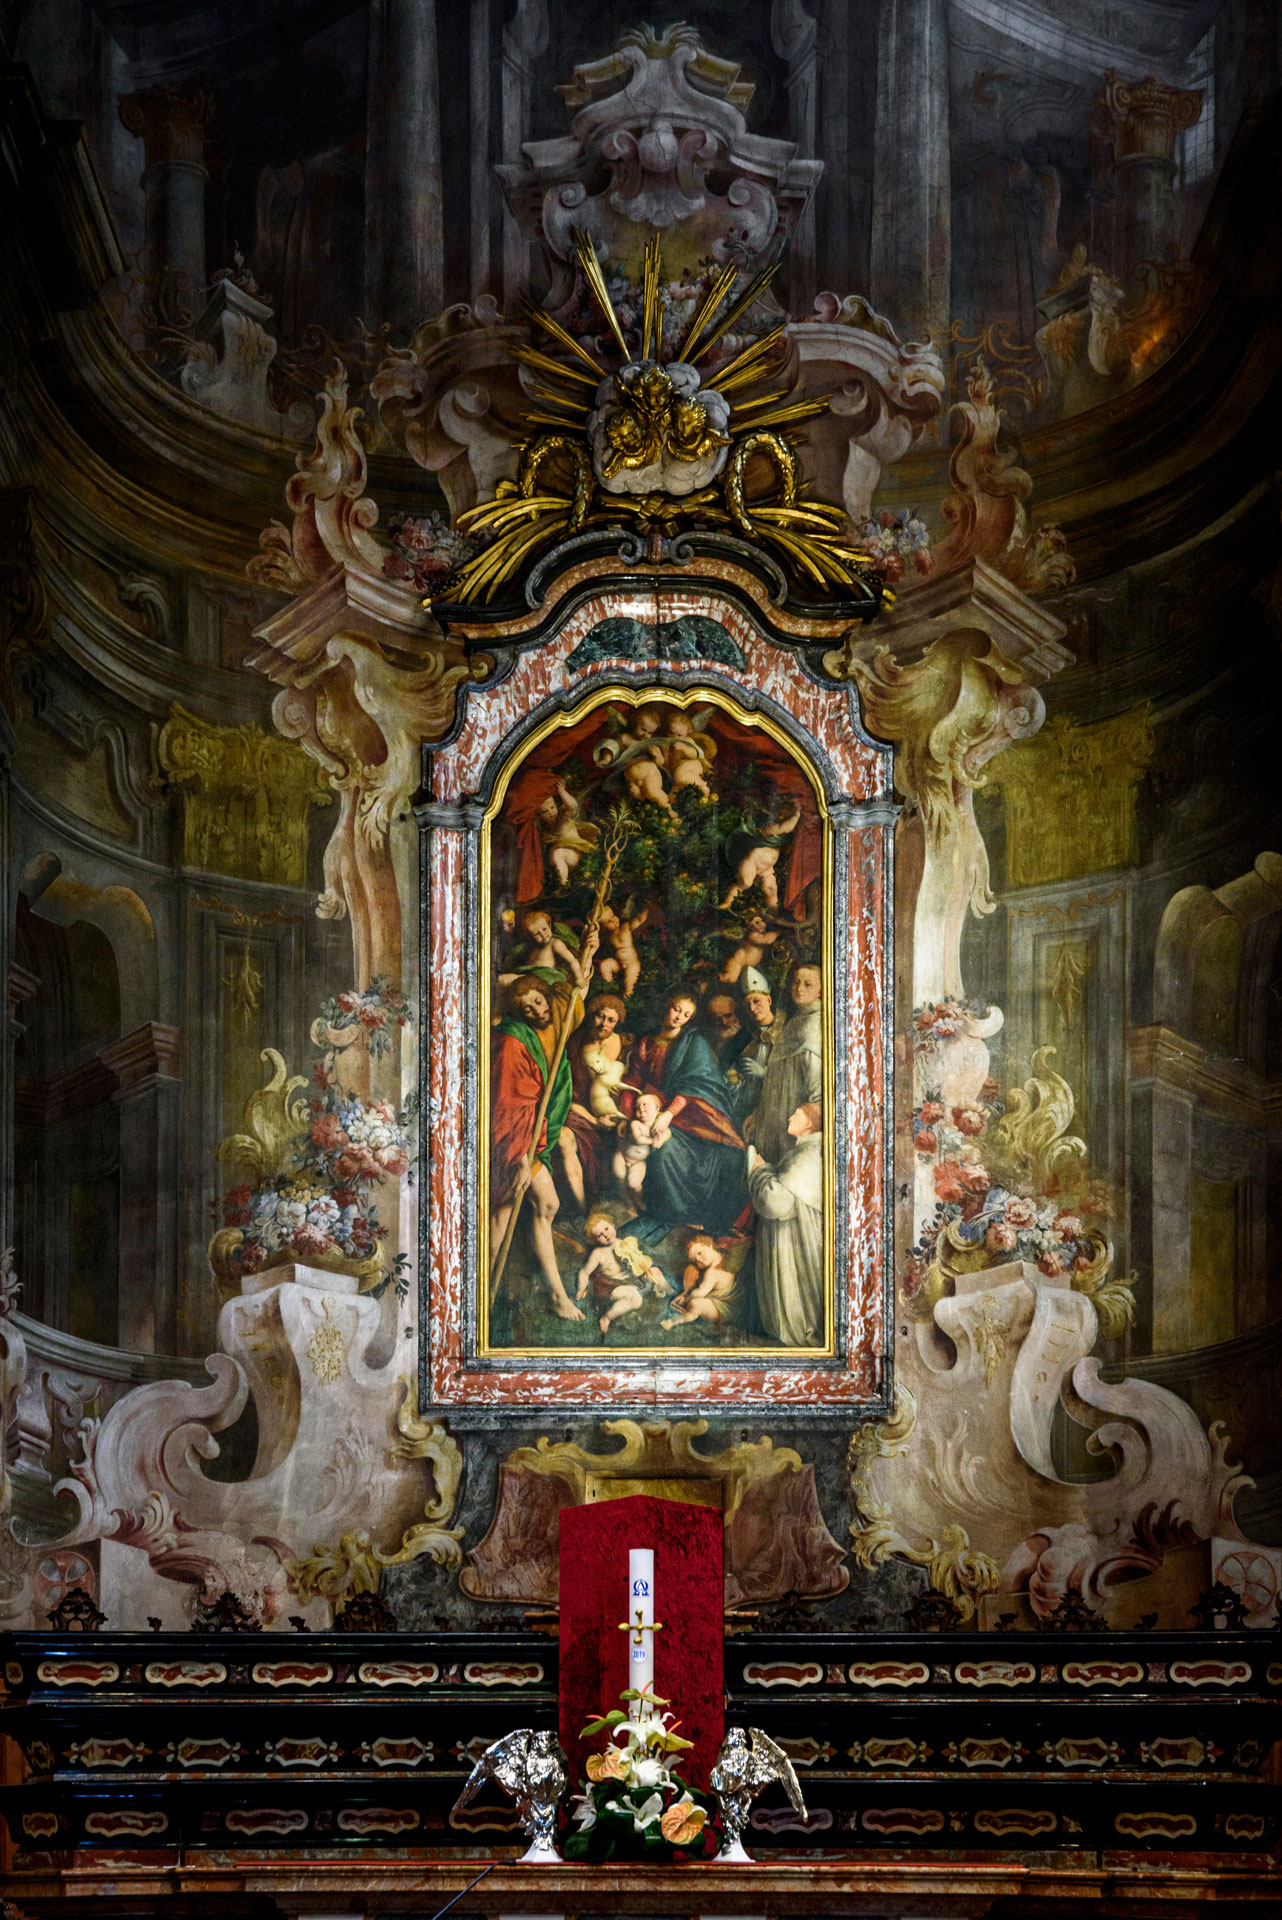 Gaudenzio Ferrari, Madonna degli aranci (1529-1530; olio su tavola, 328 x 170 cm; Vercelli, San Cristoforo)
